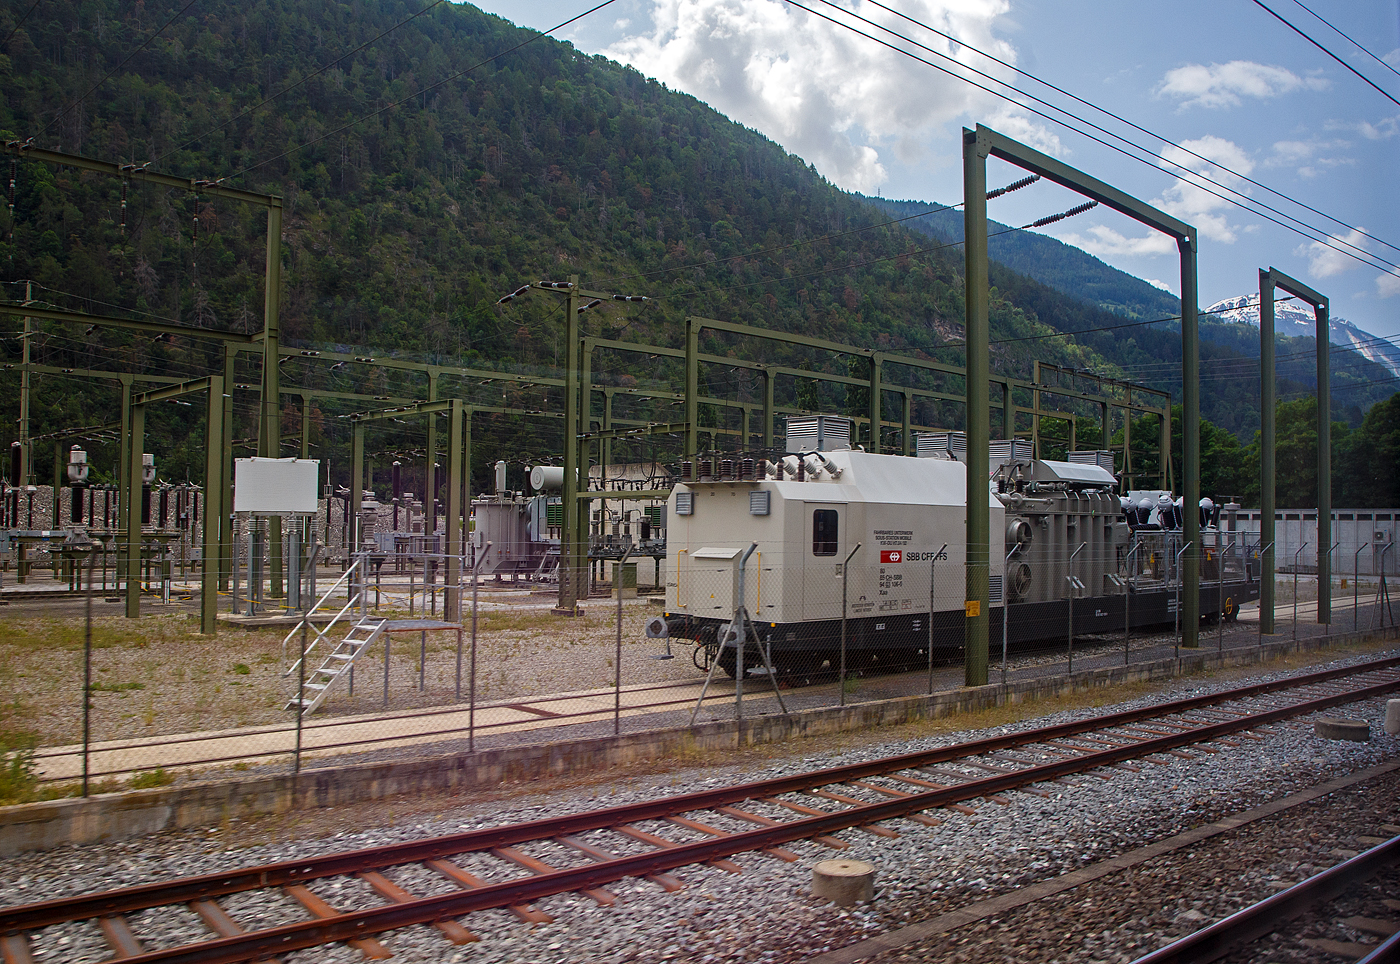 Achtachsiges SBB Fahrbares Unterwerk, Sous-Station Mobile, KW-DU H7.84/92, Xaa 80 85 94 03 106-0 CH-SBB, der SBB - Schweizerischen Bundesbahnen, ex Xa 30 85 98 00 206-x CH-SBB, am 28.05.2023 bei Gampel-Steg/Wallis (Industriezone Schnydrigen), aufgenommen aus einem Zug heraus. 

Ein fahrbares Unterwerk ist ein Umspannwagen bzw. Transformatorwagen mit Hochspannungsschaltanlage. Fahrbare Unterwerke werden insbesondere bei den SBB häufig eingesetzt. Die SBB betreiben ein eigenes Hochspannungsnetz mit einer Frequenz von 16,7 Hertz.

Von dieser dritten Serie (Xa 30 85 98 00 206 bis 209, ab 1991 umgezeichnet in Xaa 80 85 94 03 106 bis 109) Fahrbares Unterwerk wurden 4 Wagen 1985  von der Ferriere Cattaneo SA gebaut. Die 140 t und ca. 24,5 m langen Wagen laufen auf zwei vierachsigen Tiefladewagen-Drehgestelle SBB TLW 52, diese haben einern Achsstand 3 x 1.500 mm, der Laufraddurchmesser beträgt 850 mm (neu).